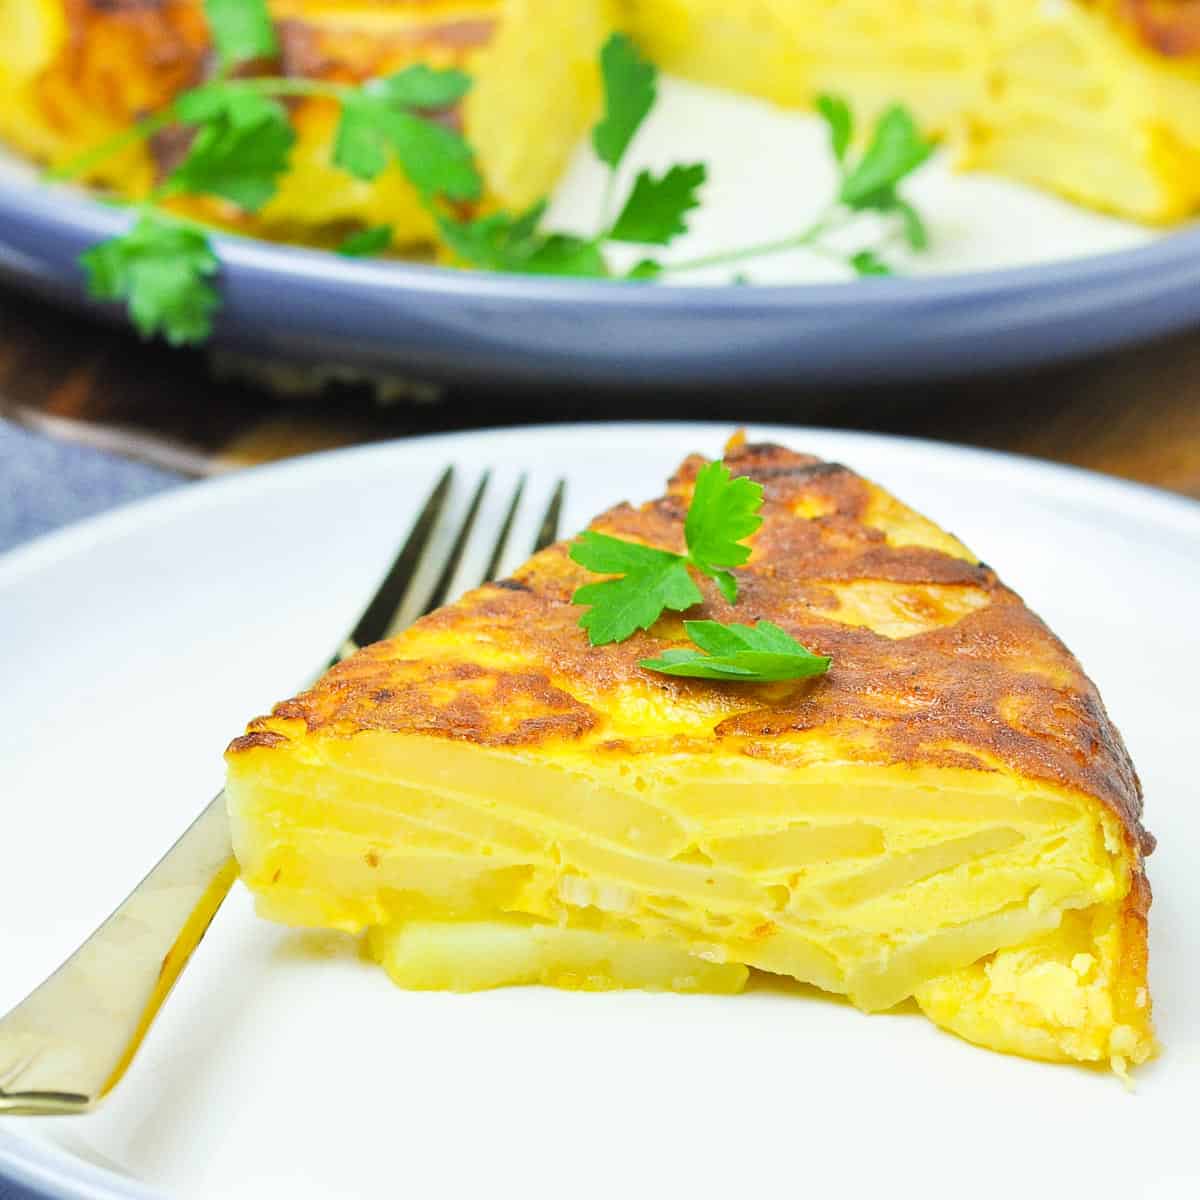 Tortilla de patatas (Spanish omelette), Recipe